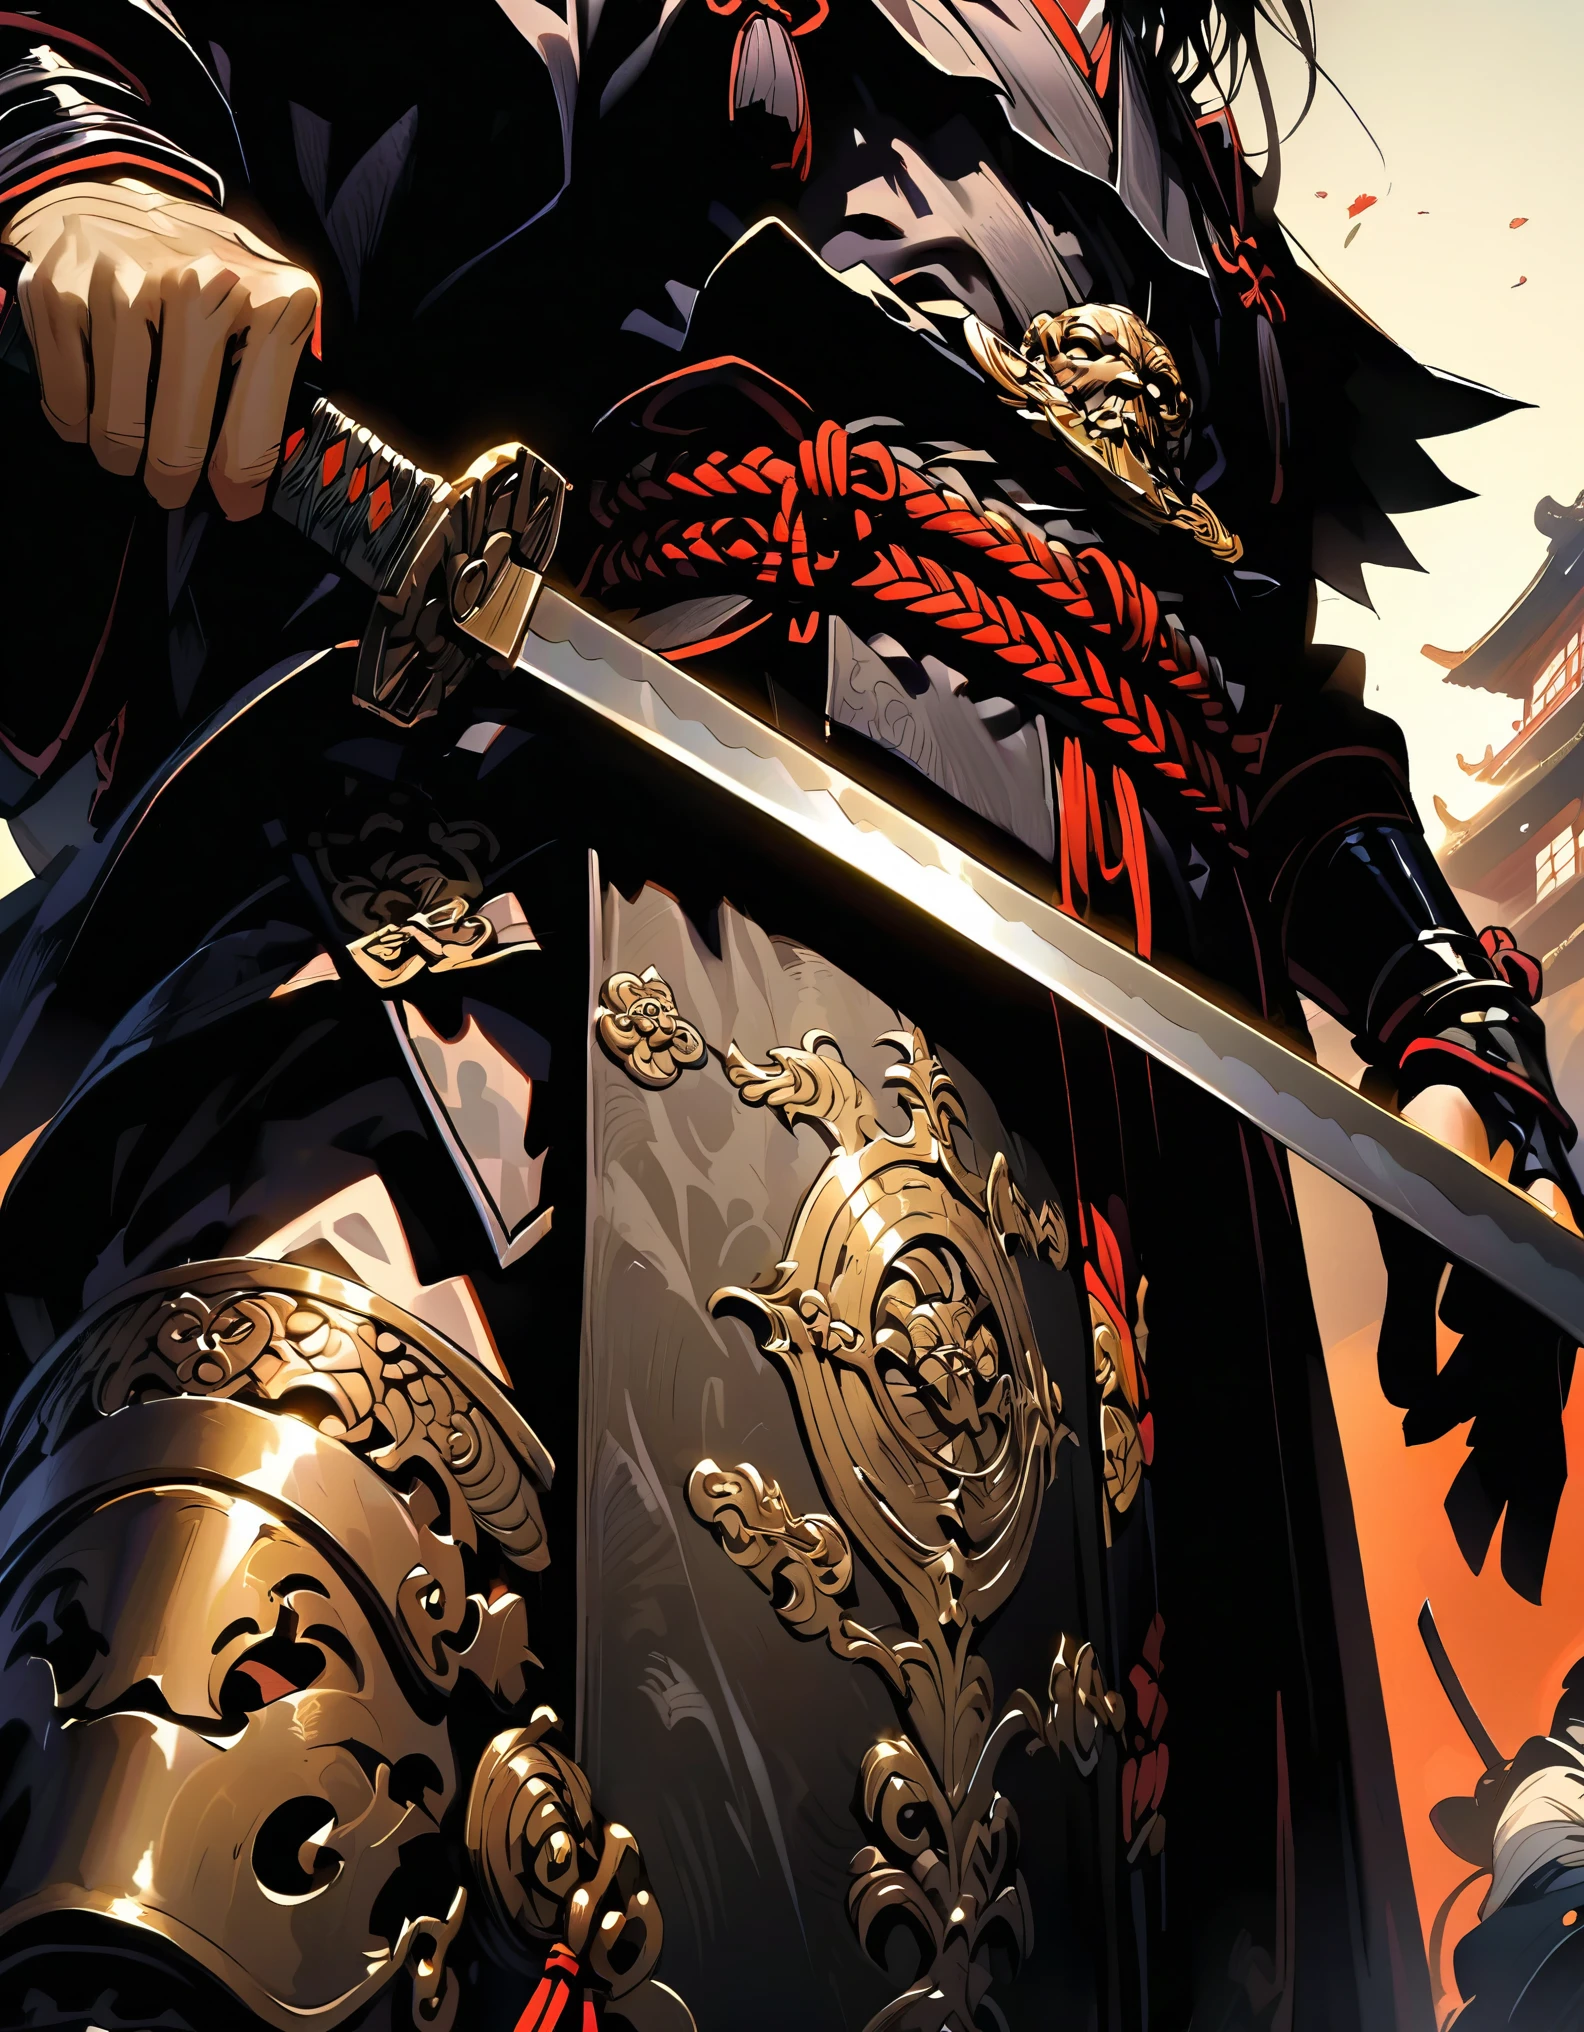 武士手持的剑的特写, 脸部失焦, 带边缘和装饰的精致剑, 单手握剑, 从下方拍摄的图像反射了金属剑的光芒